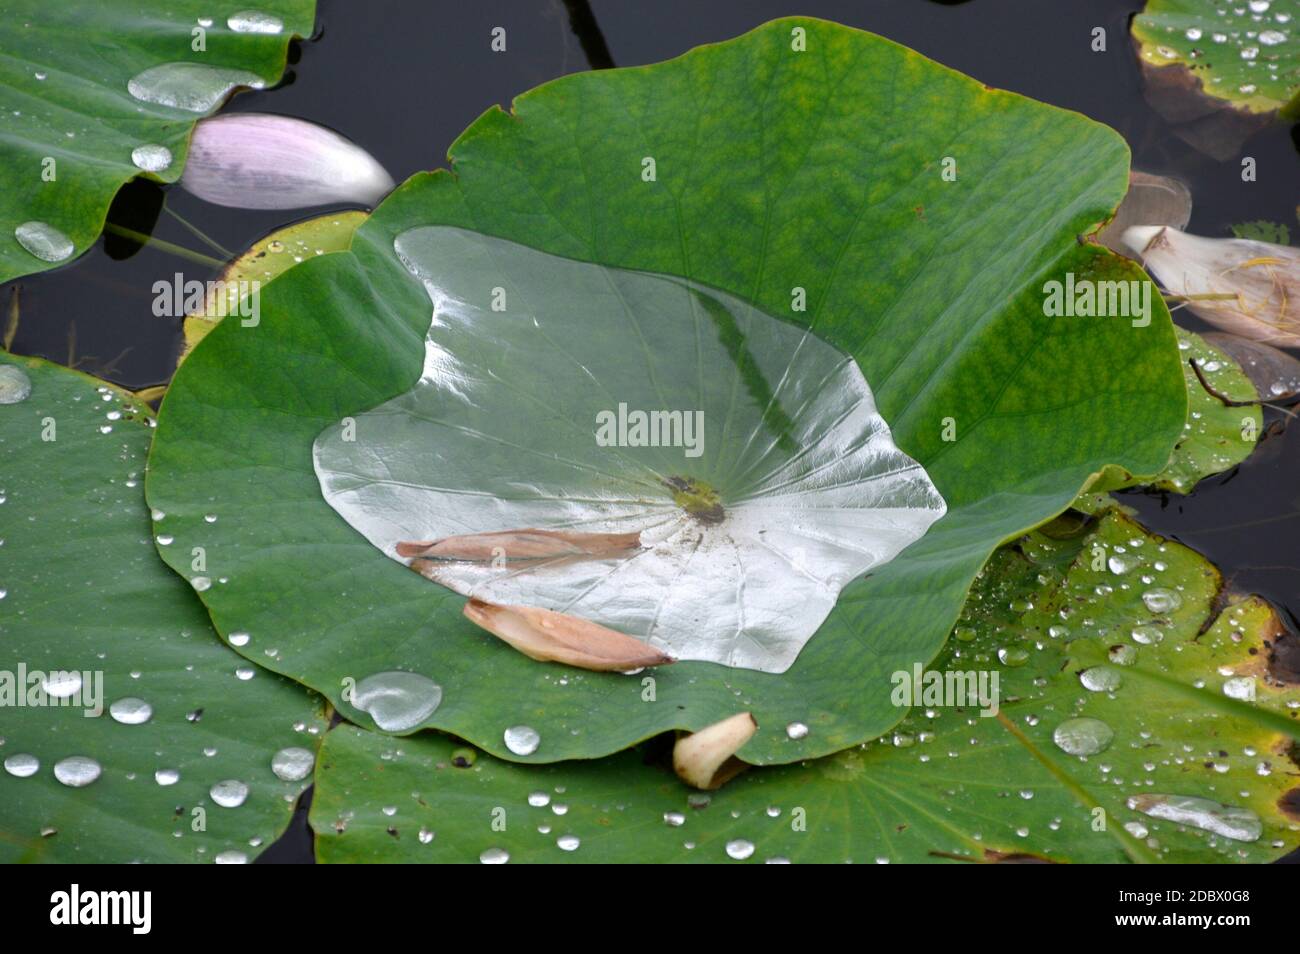 Lotus leaves full of water in the rain. Russian Far East, lotus lake Stock Photo